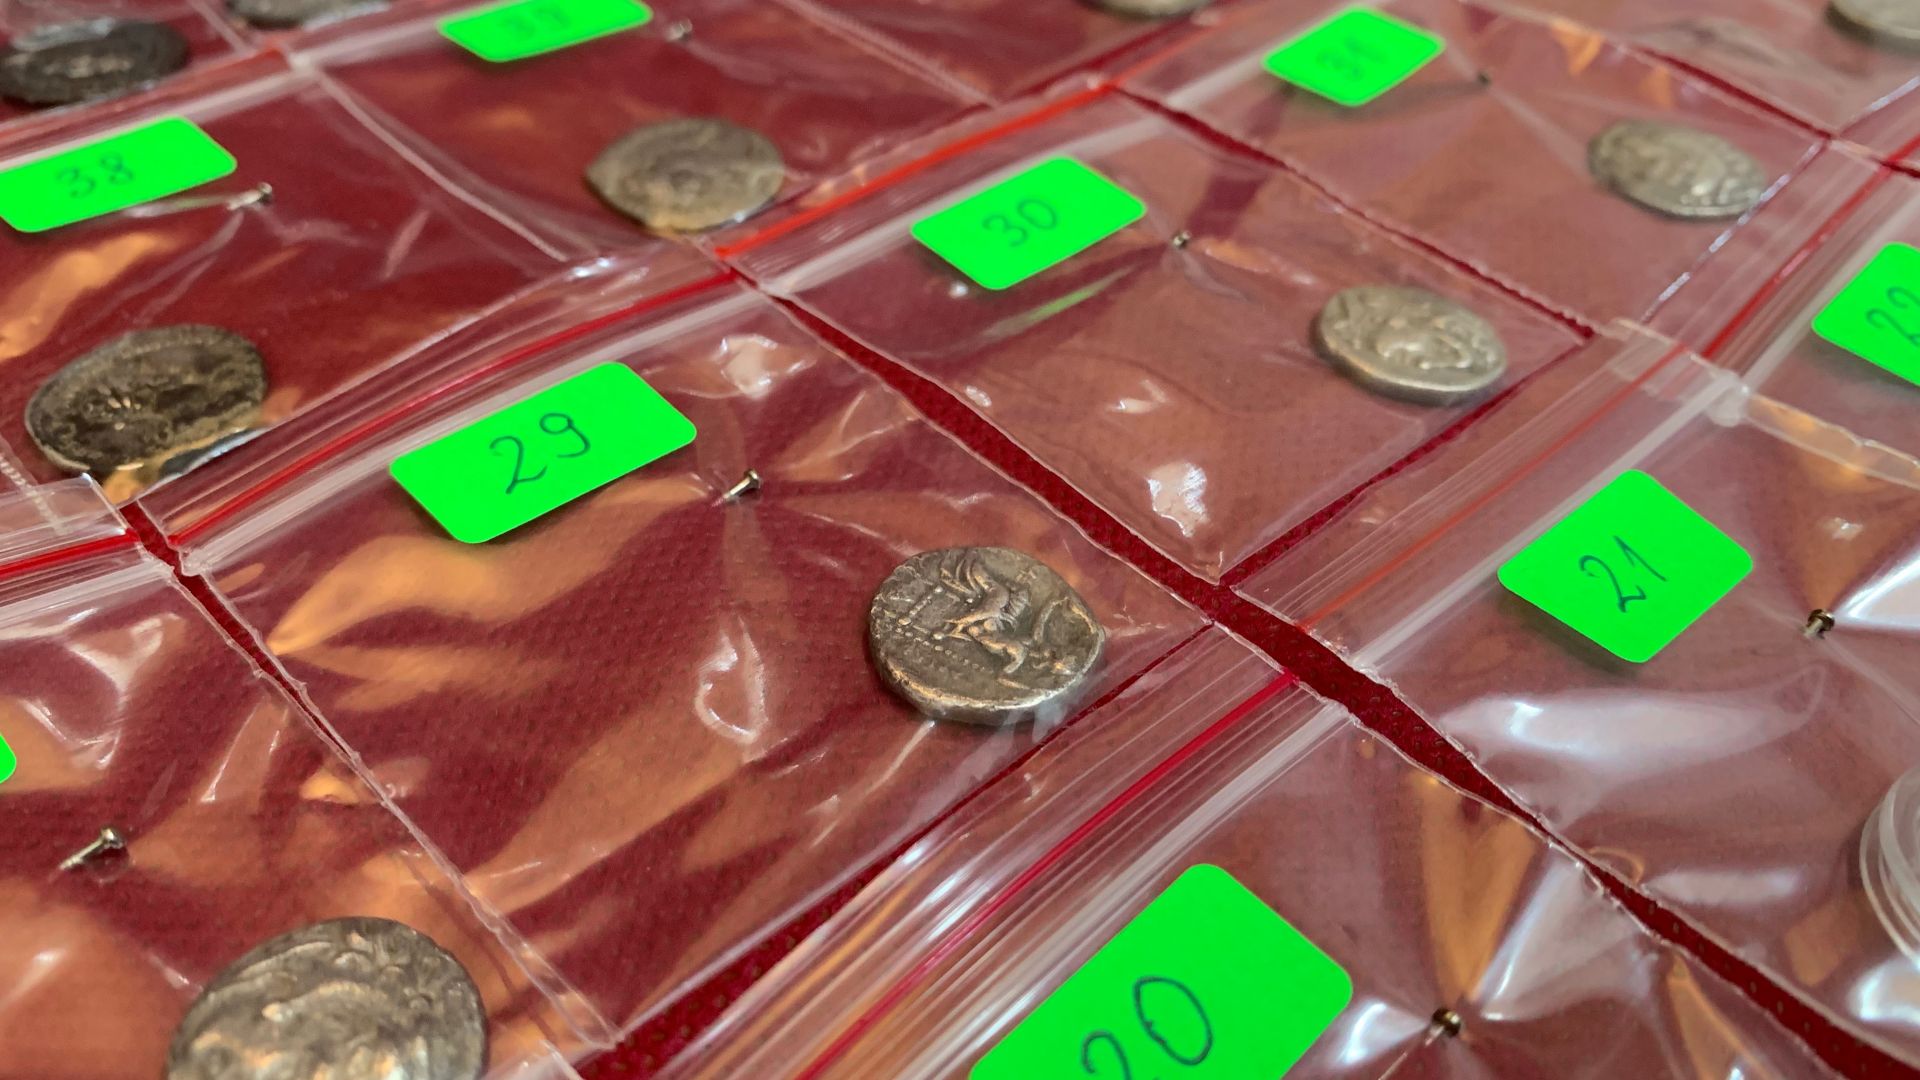 България върна на Турция 63 артефакта от които 56 монети